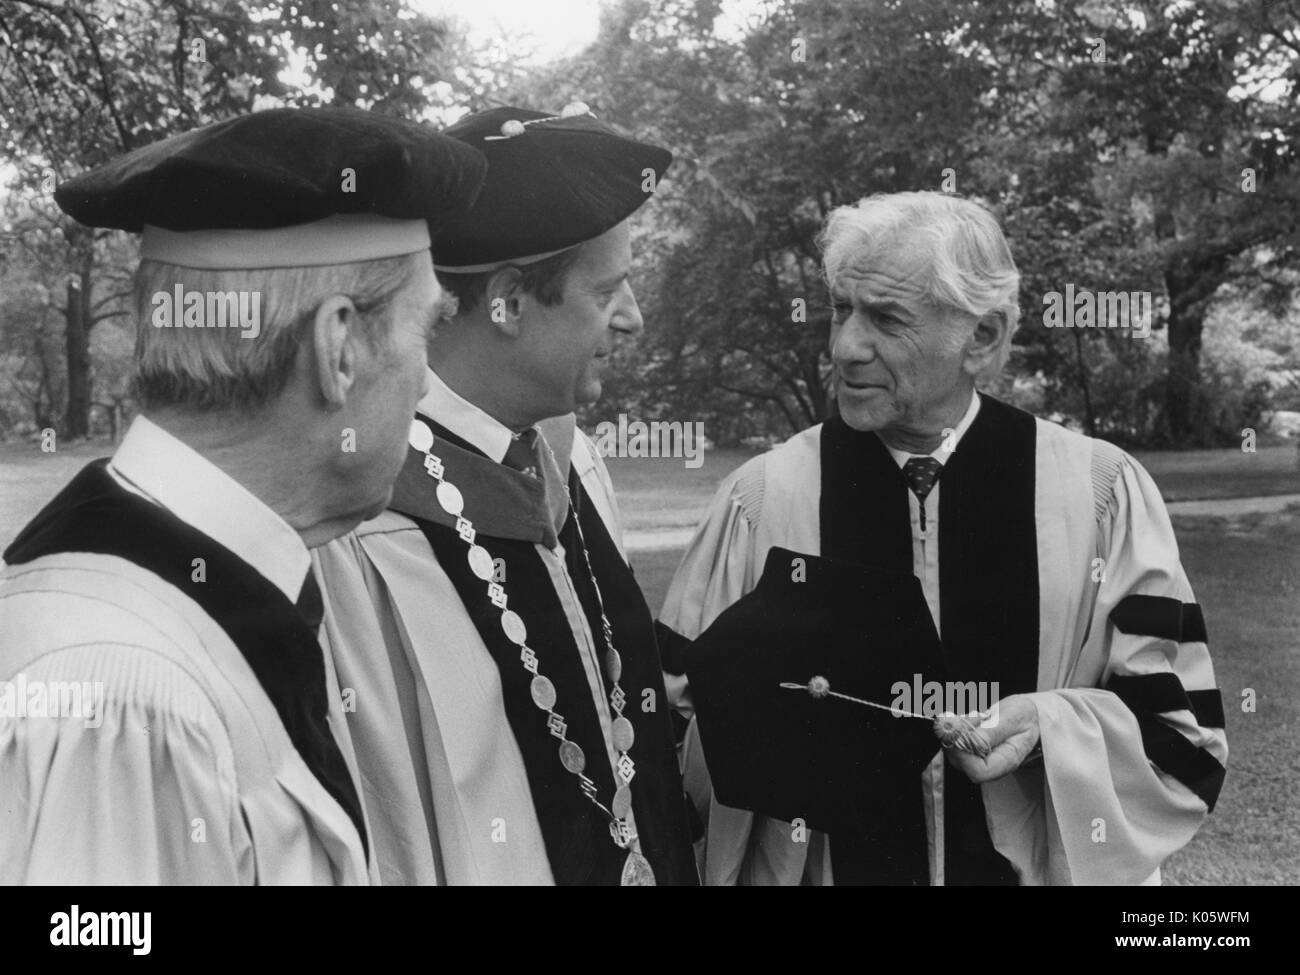 Brustbild von zwei Johns Hopkins Professoren und der Präsident, Steven Muller, mit amerikanischer Komponist und Pianist Leonard Bernstein auf seinem Recht, alle drei Männer in Kappen und Kleid geschmückt, stehend auf dem Gras außerhalb, Bernstein seinen Hut aus- und halten Sie es in der Hand, ernste Mimik, 1980. Stockfoto